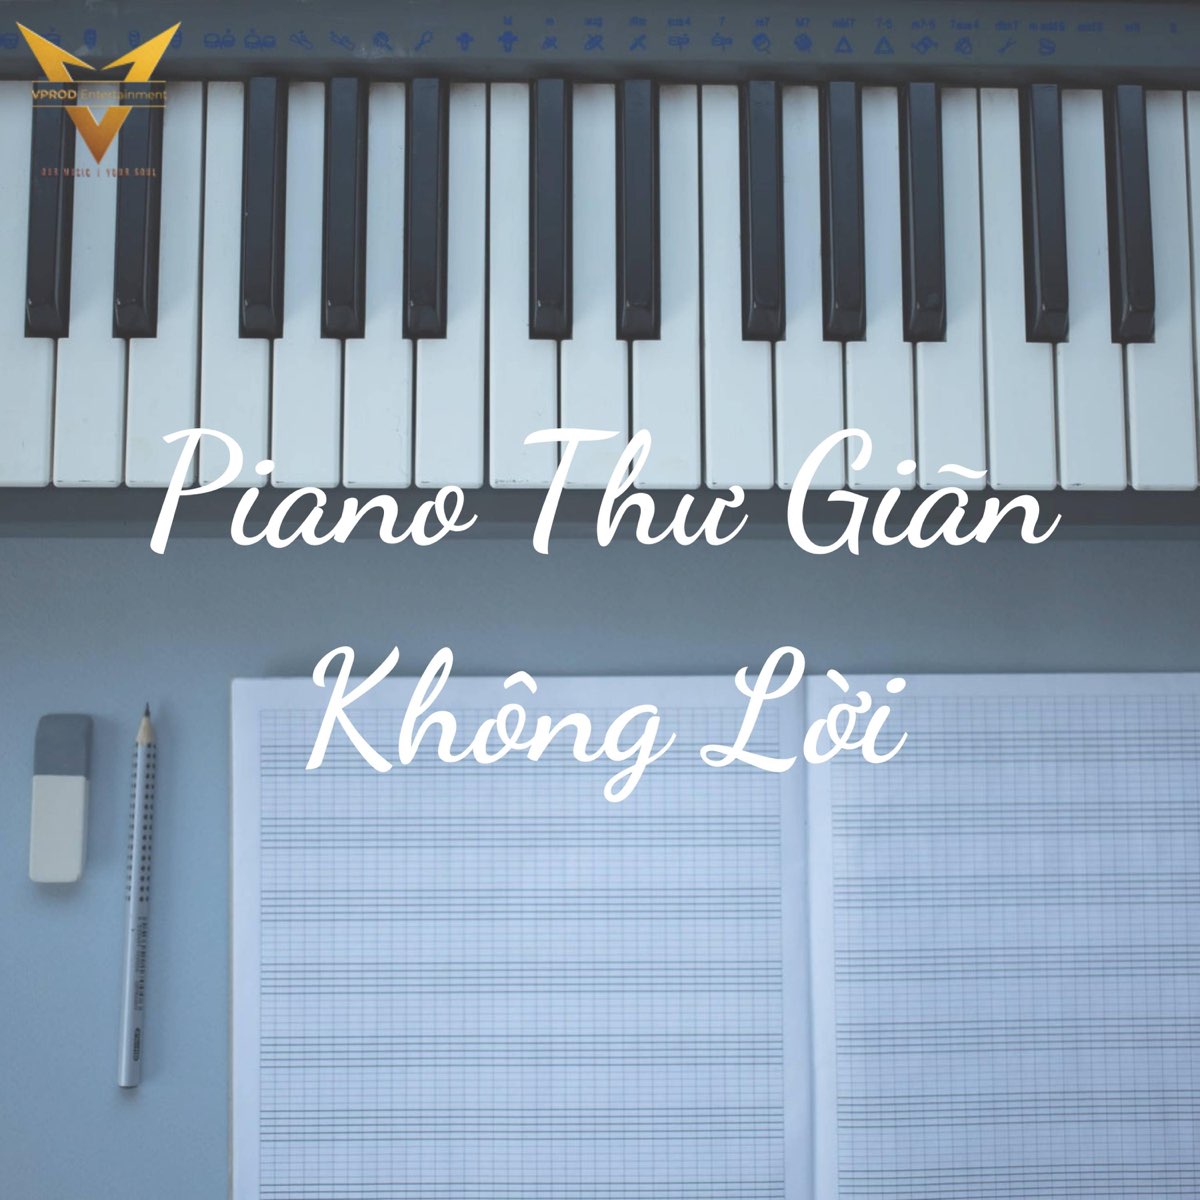 Piano Không Lời Thư Giãn by VPROD Publishing on Apple Music